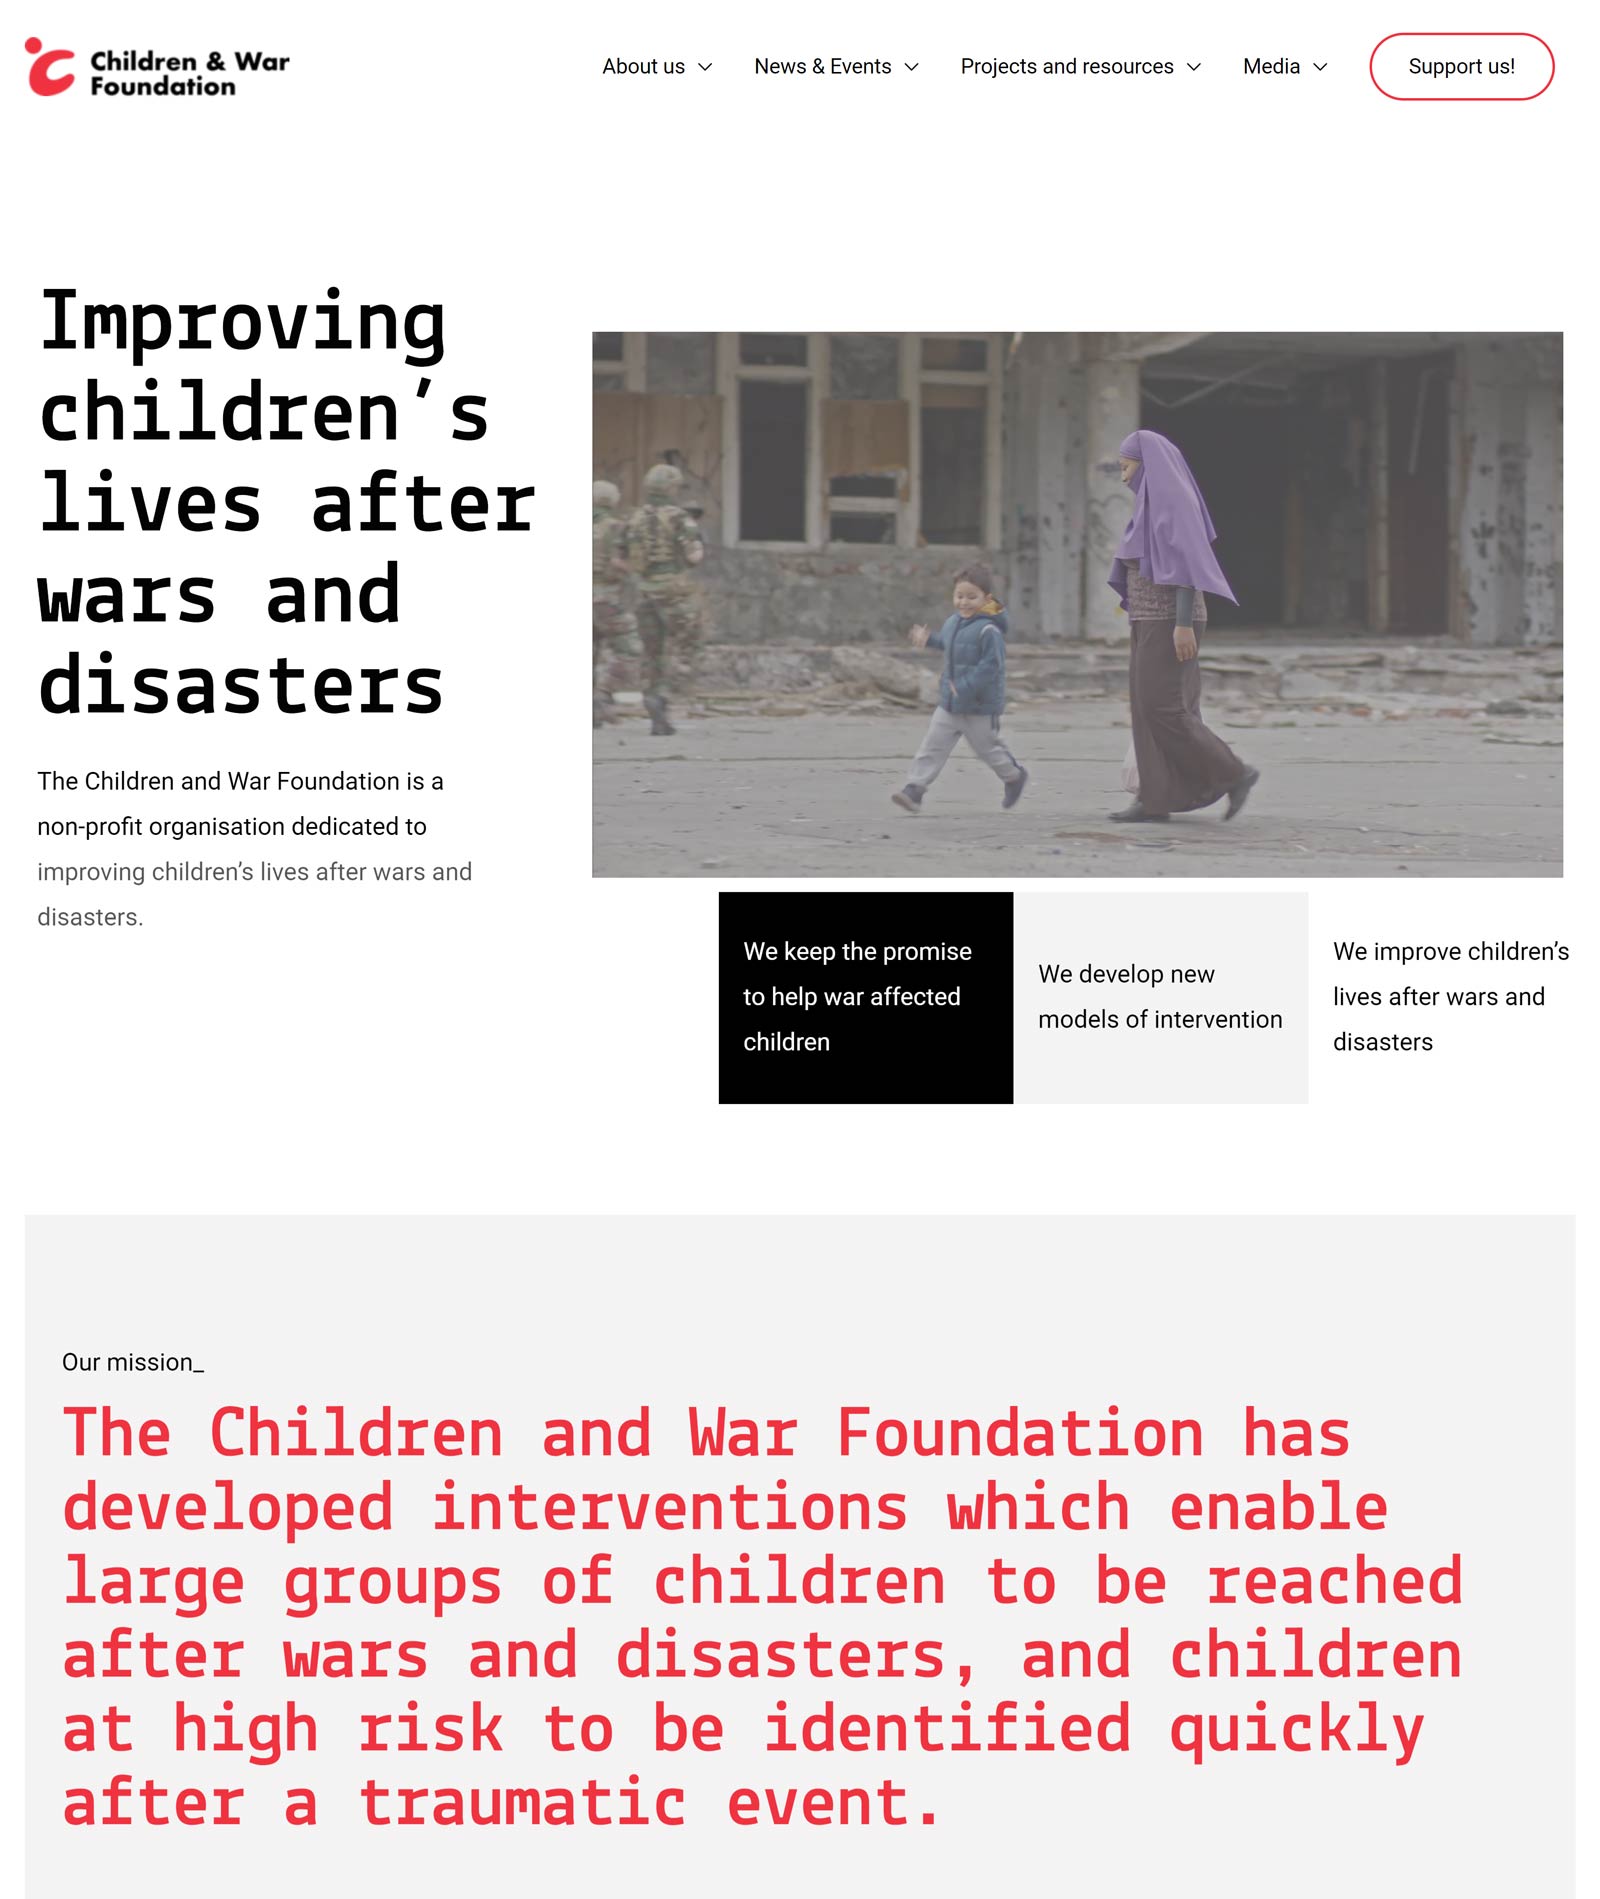 Children & War Foundation